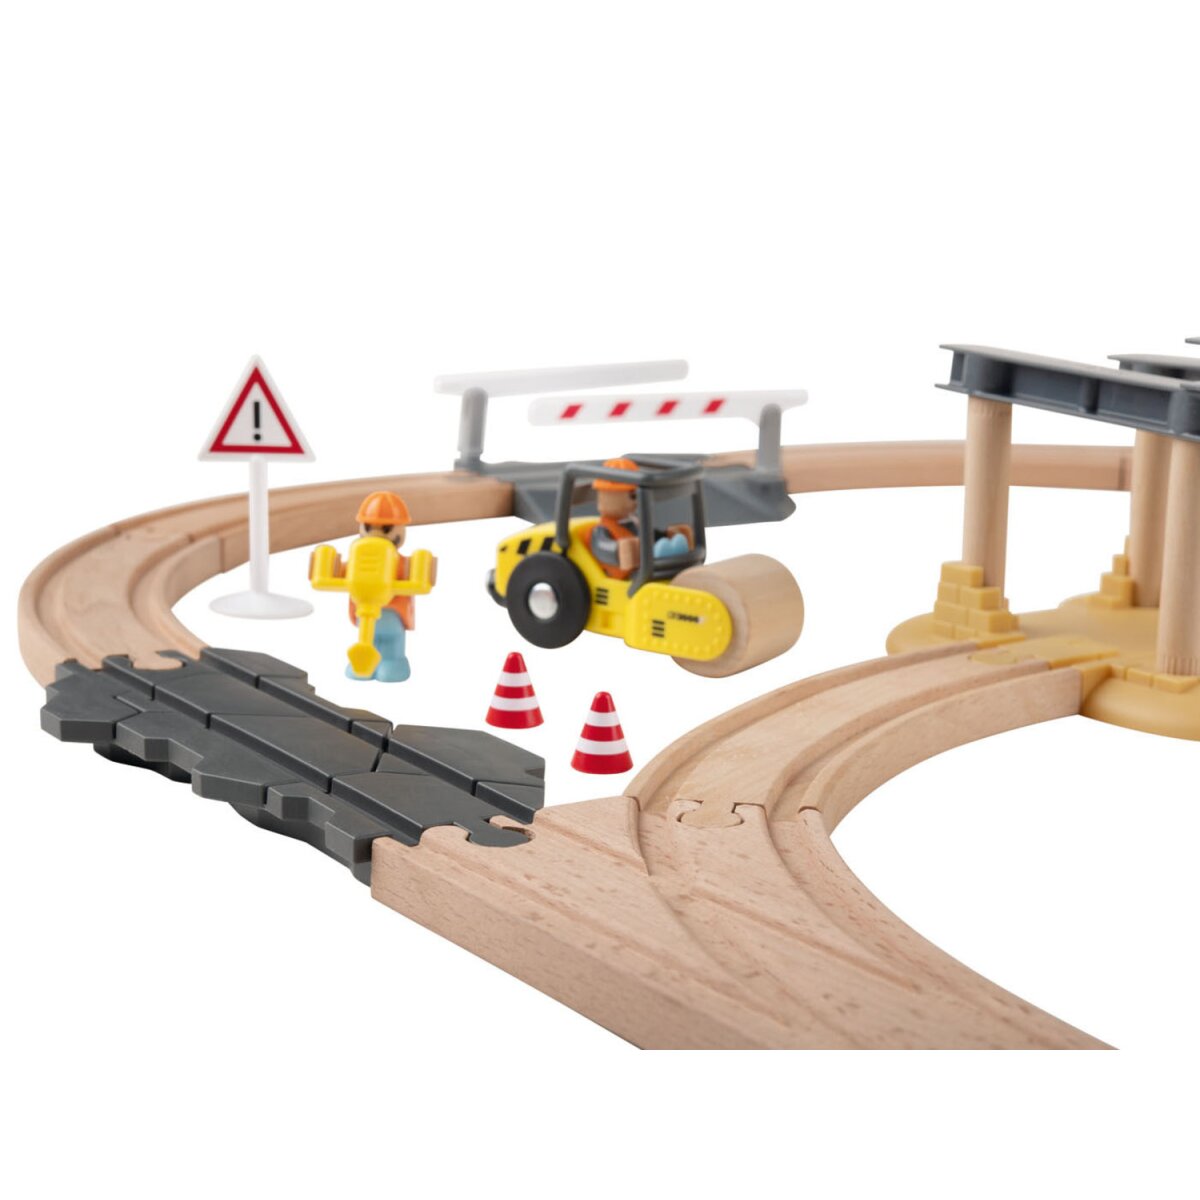 24,99 - Holz-Eisenbahn-Set Buchenholz € gut, Playtive mit Baustelle, B-Ware